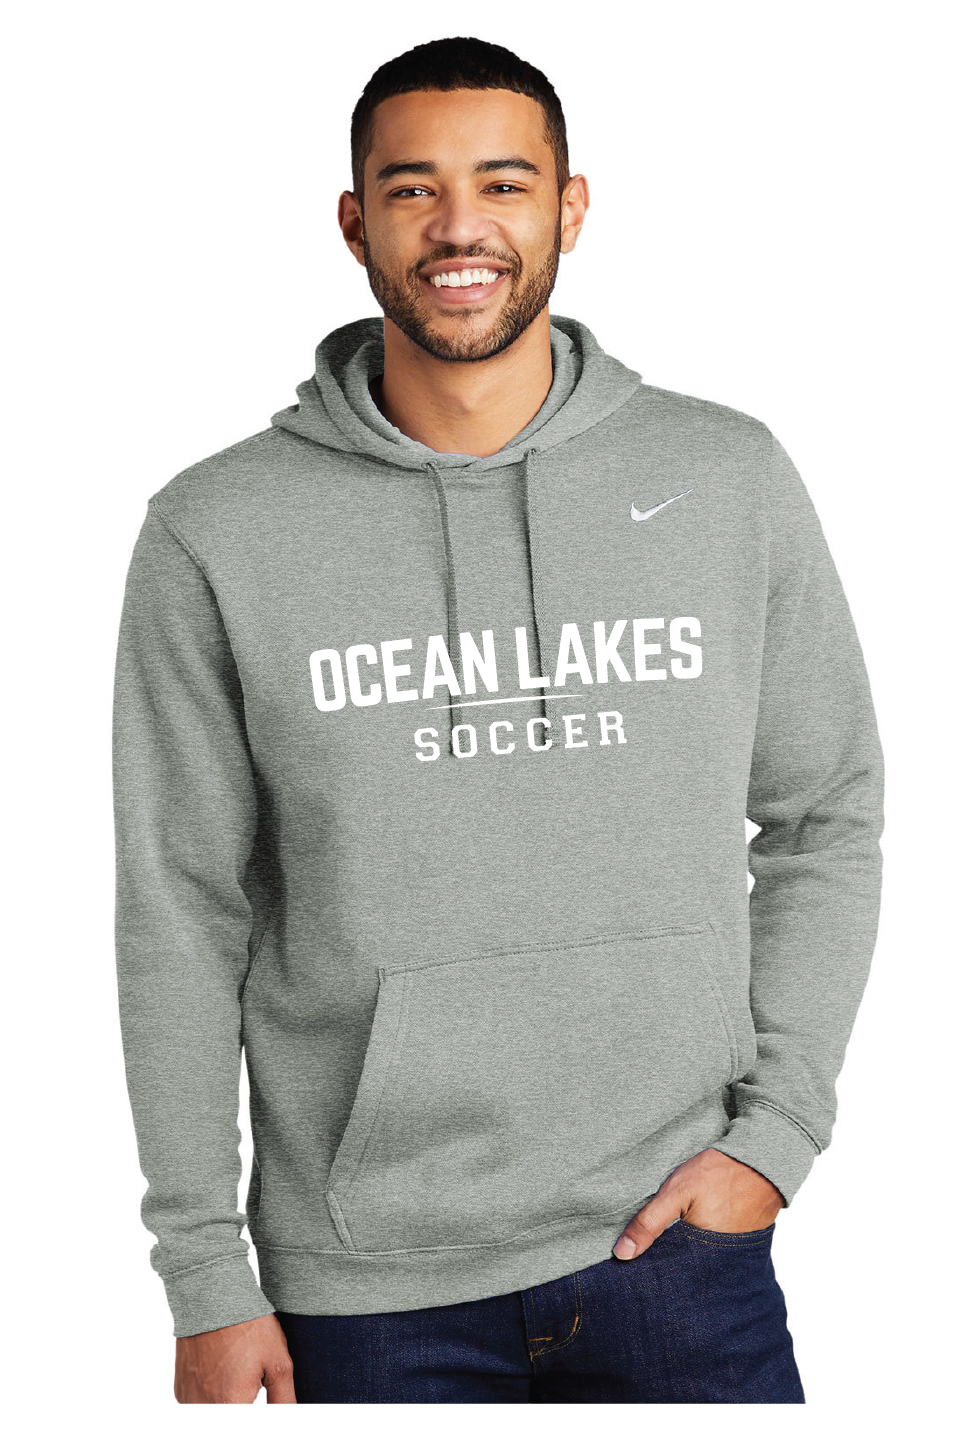 Nike Club Fleece Pullover Hoodie / Dark Grey Heather / Ocean Lakes High School Soccer